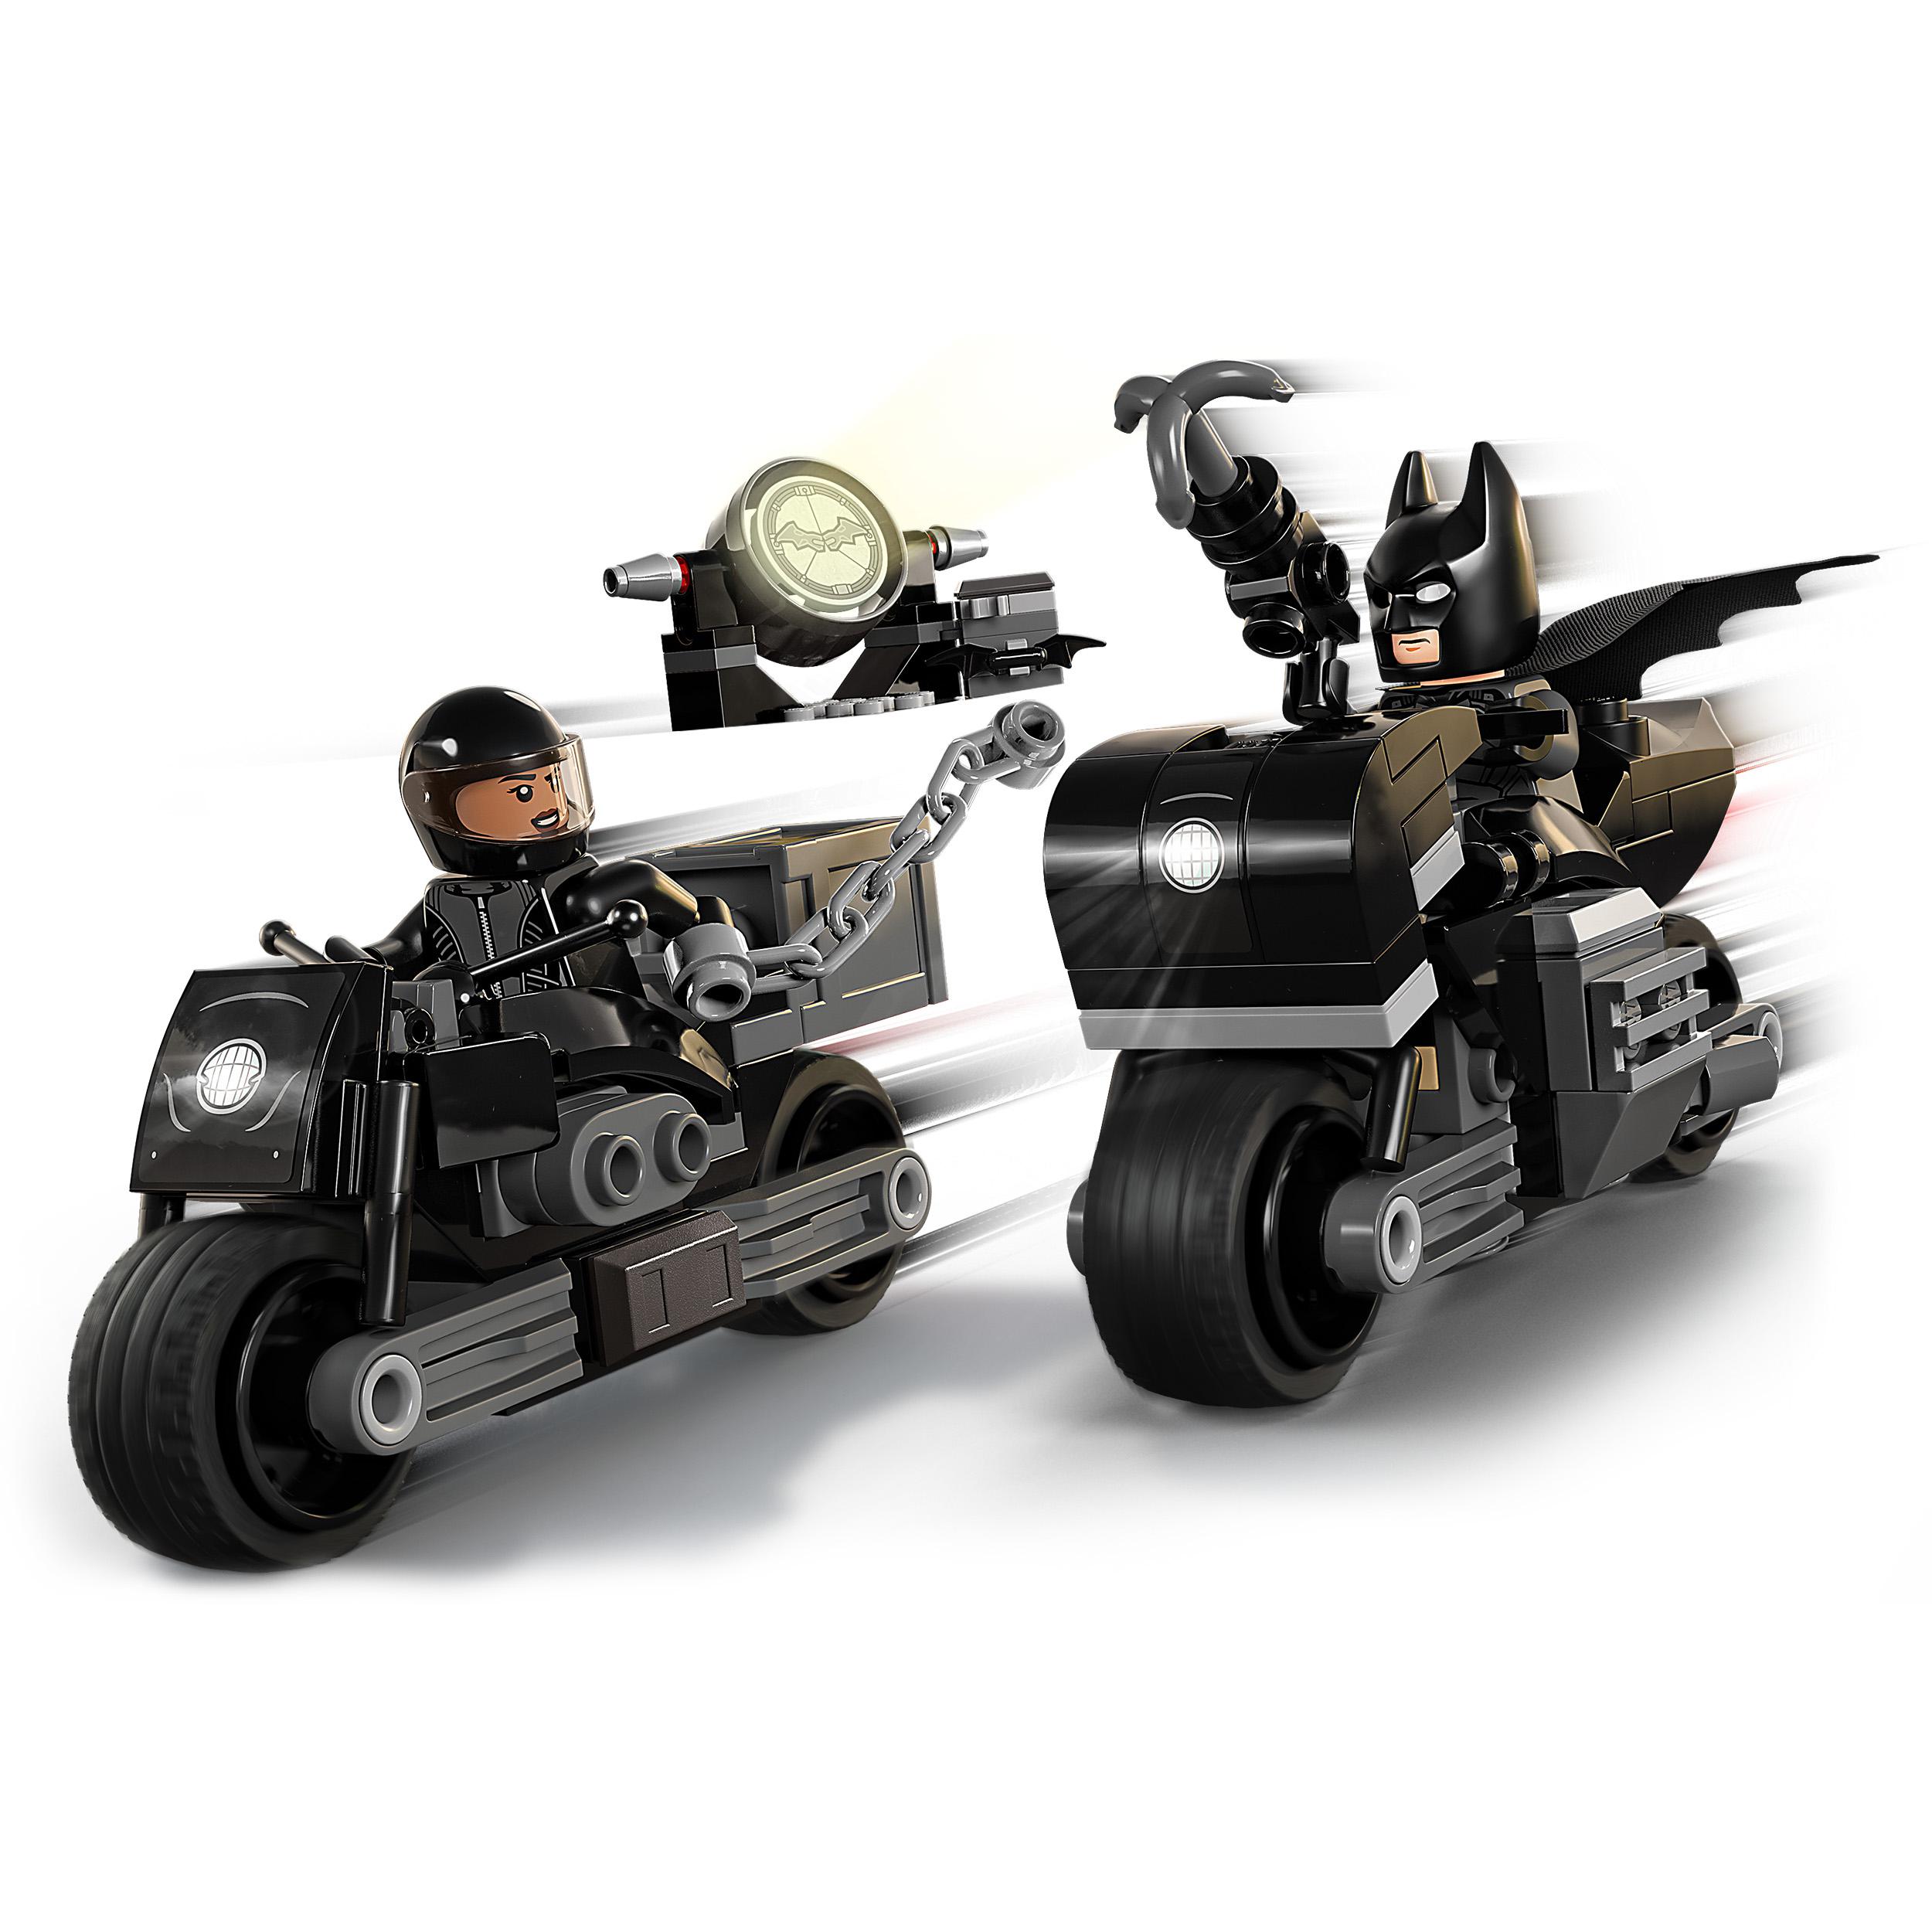 Lego dc inseguimento sulla moto di batman e selina kyle, giocattolo per bambini di 6+ anni con bat-segnale che si illumina al buio, 76179 - BATMAN, DC COMICS, LEGO SUPER HEROES, Lego